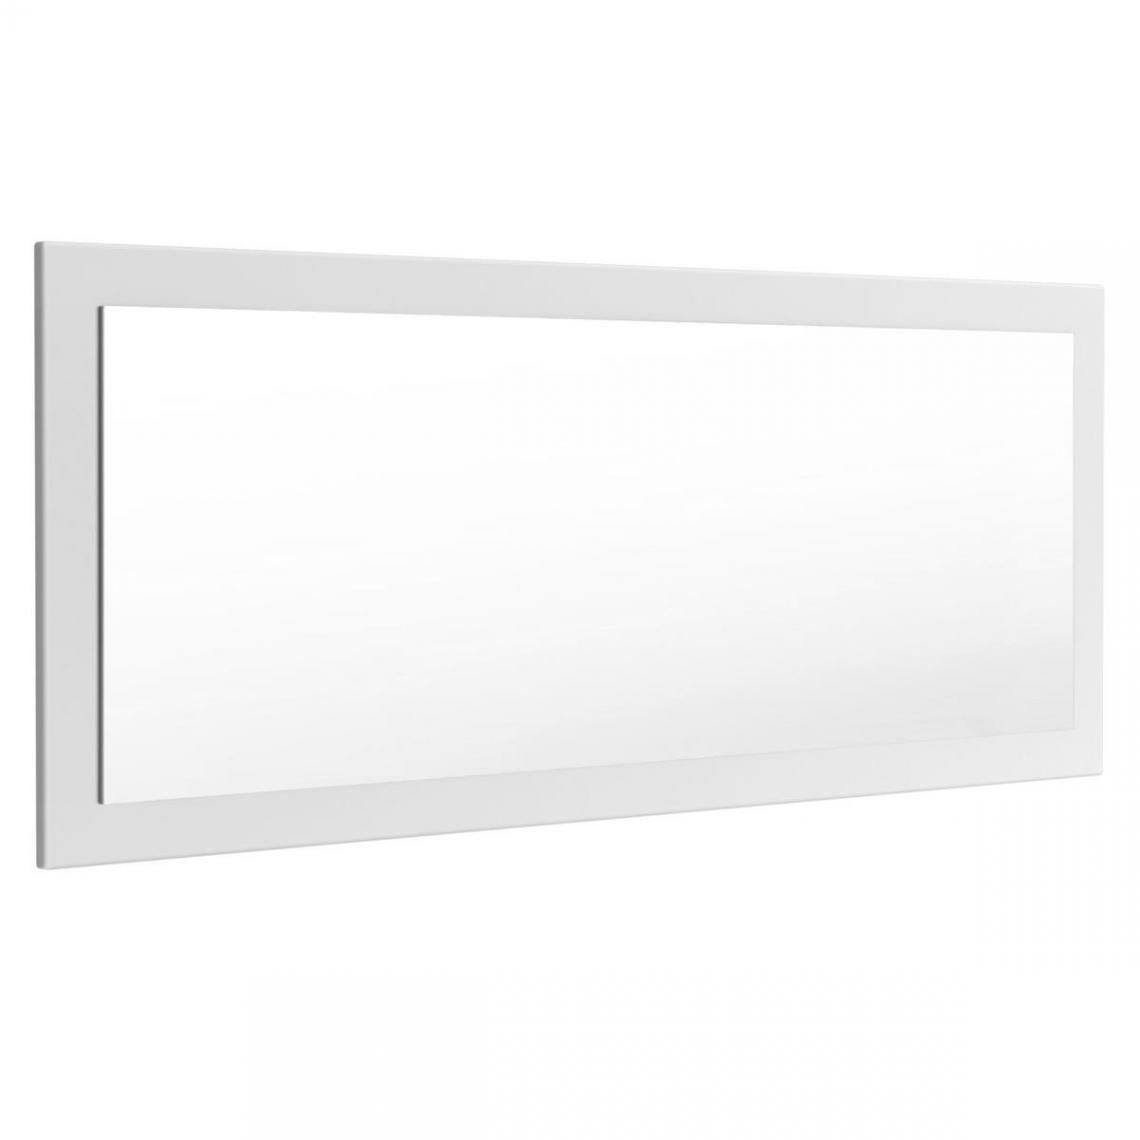 Mpc - Miroir blanc brillant (HxLxP): 139 x 55 x 2 - Miroir de salle de bain